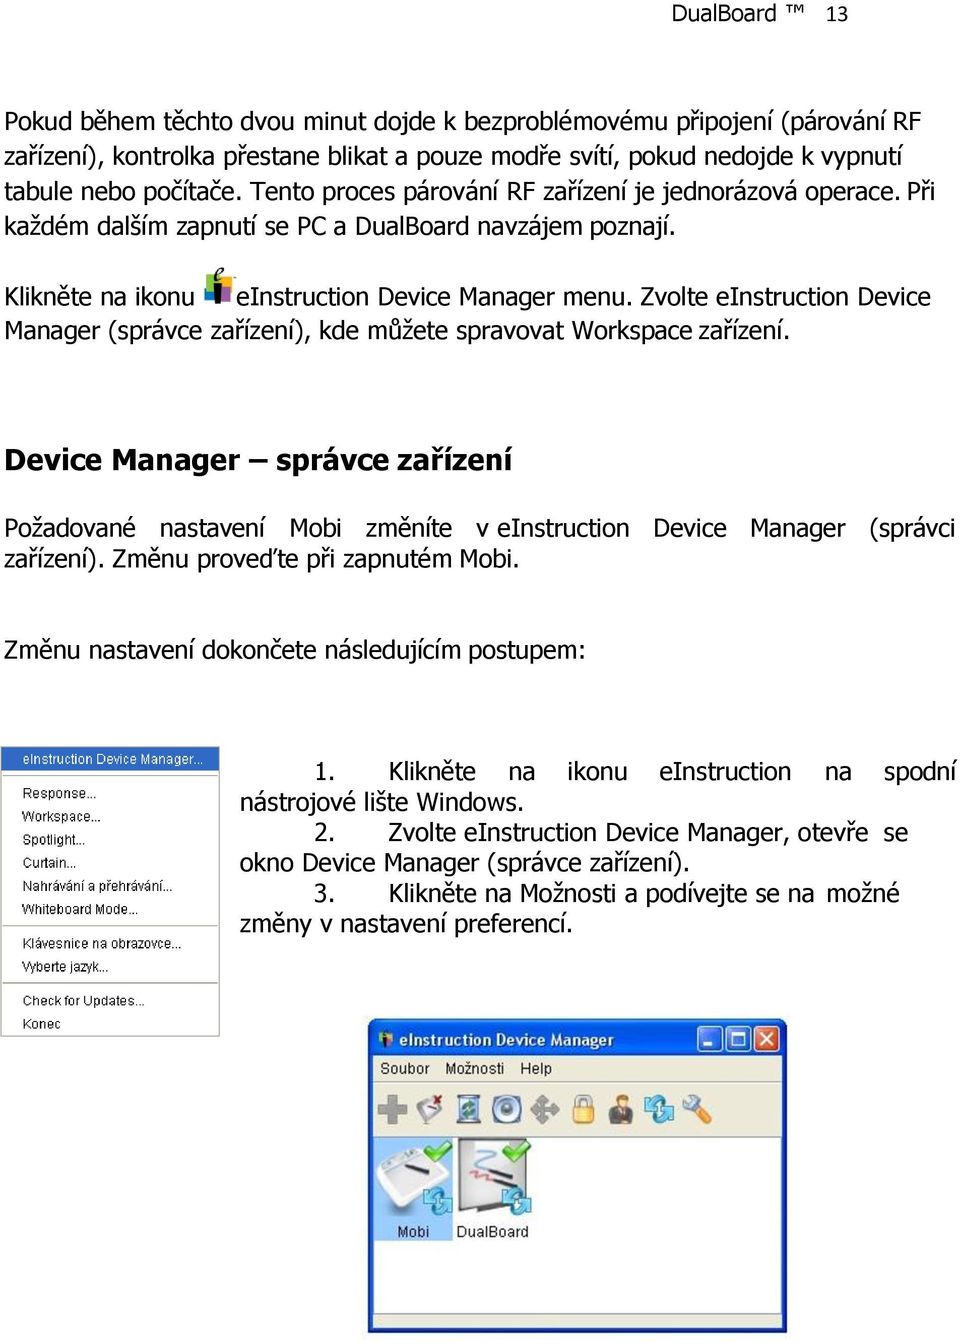 Zvolte einstruction Device Manager (správce zařízení), kde můžete spravovat Workspace zařízení.